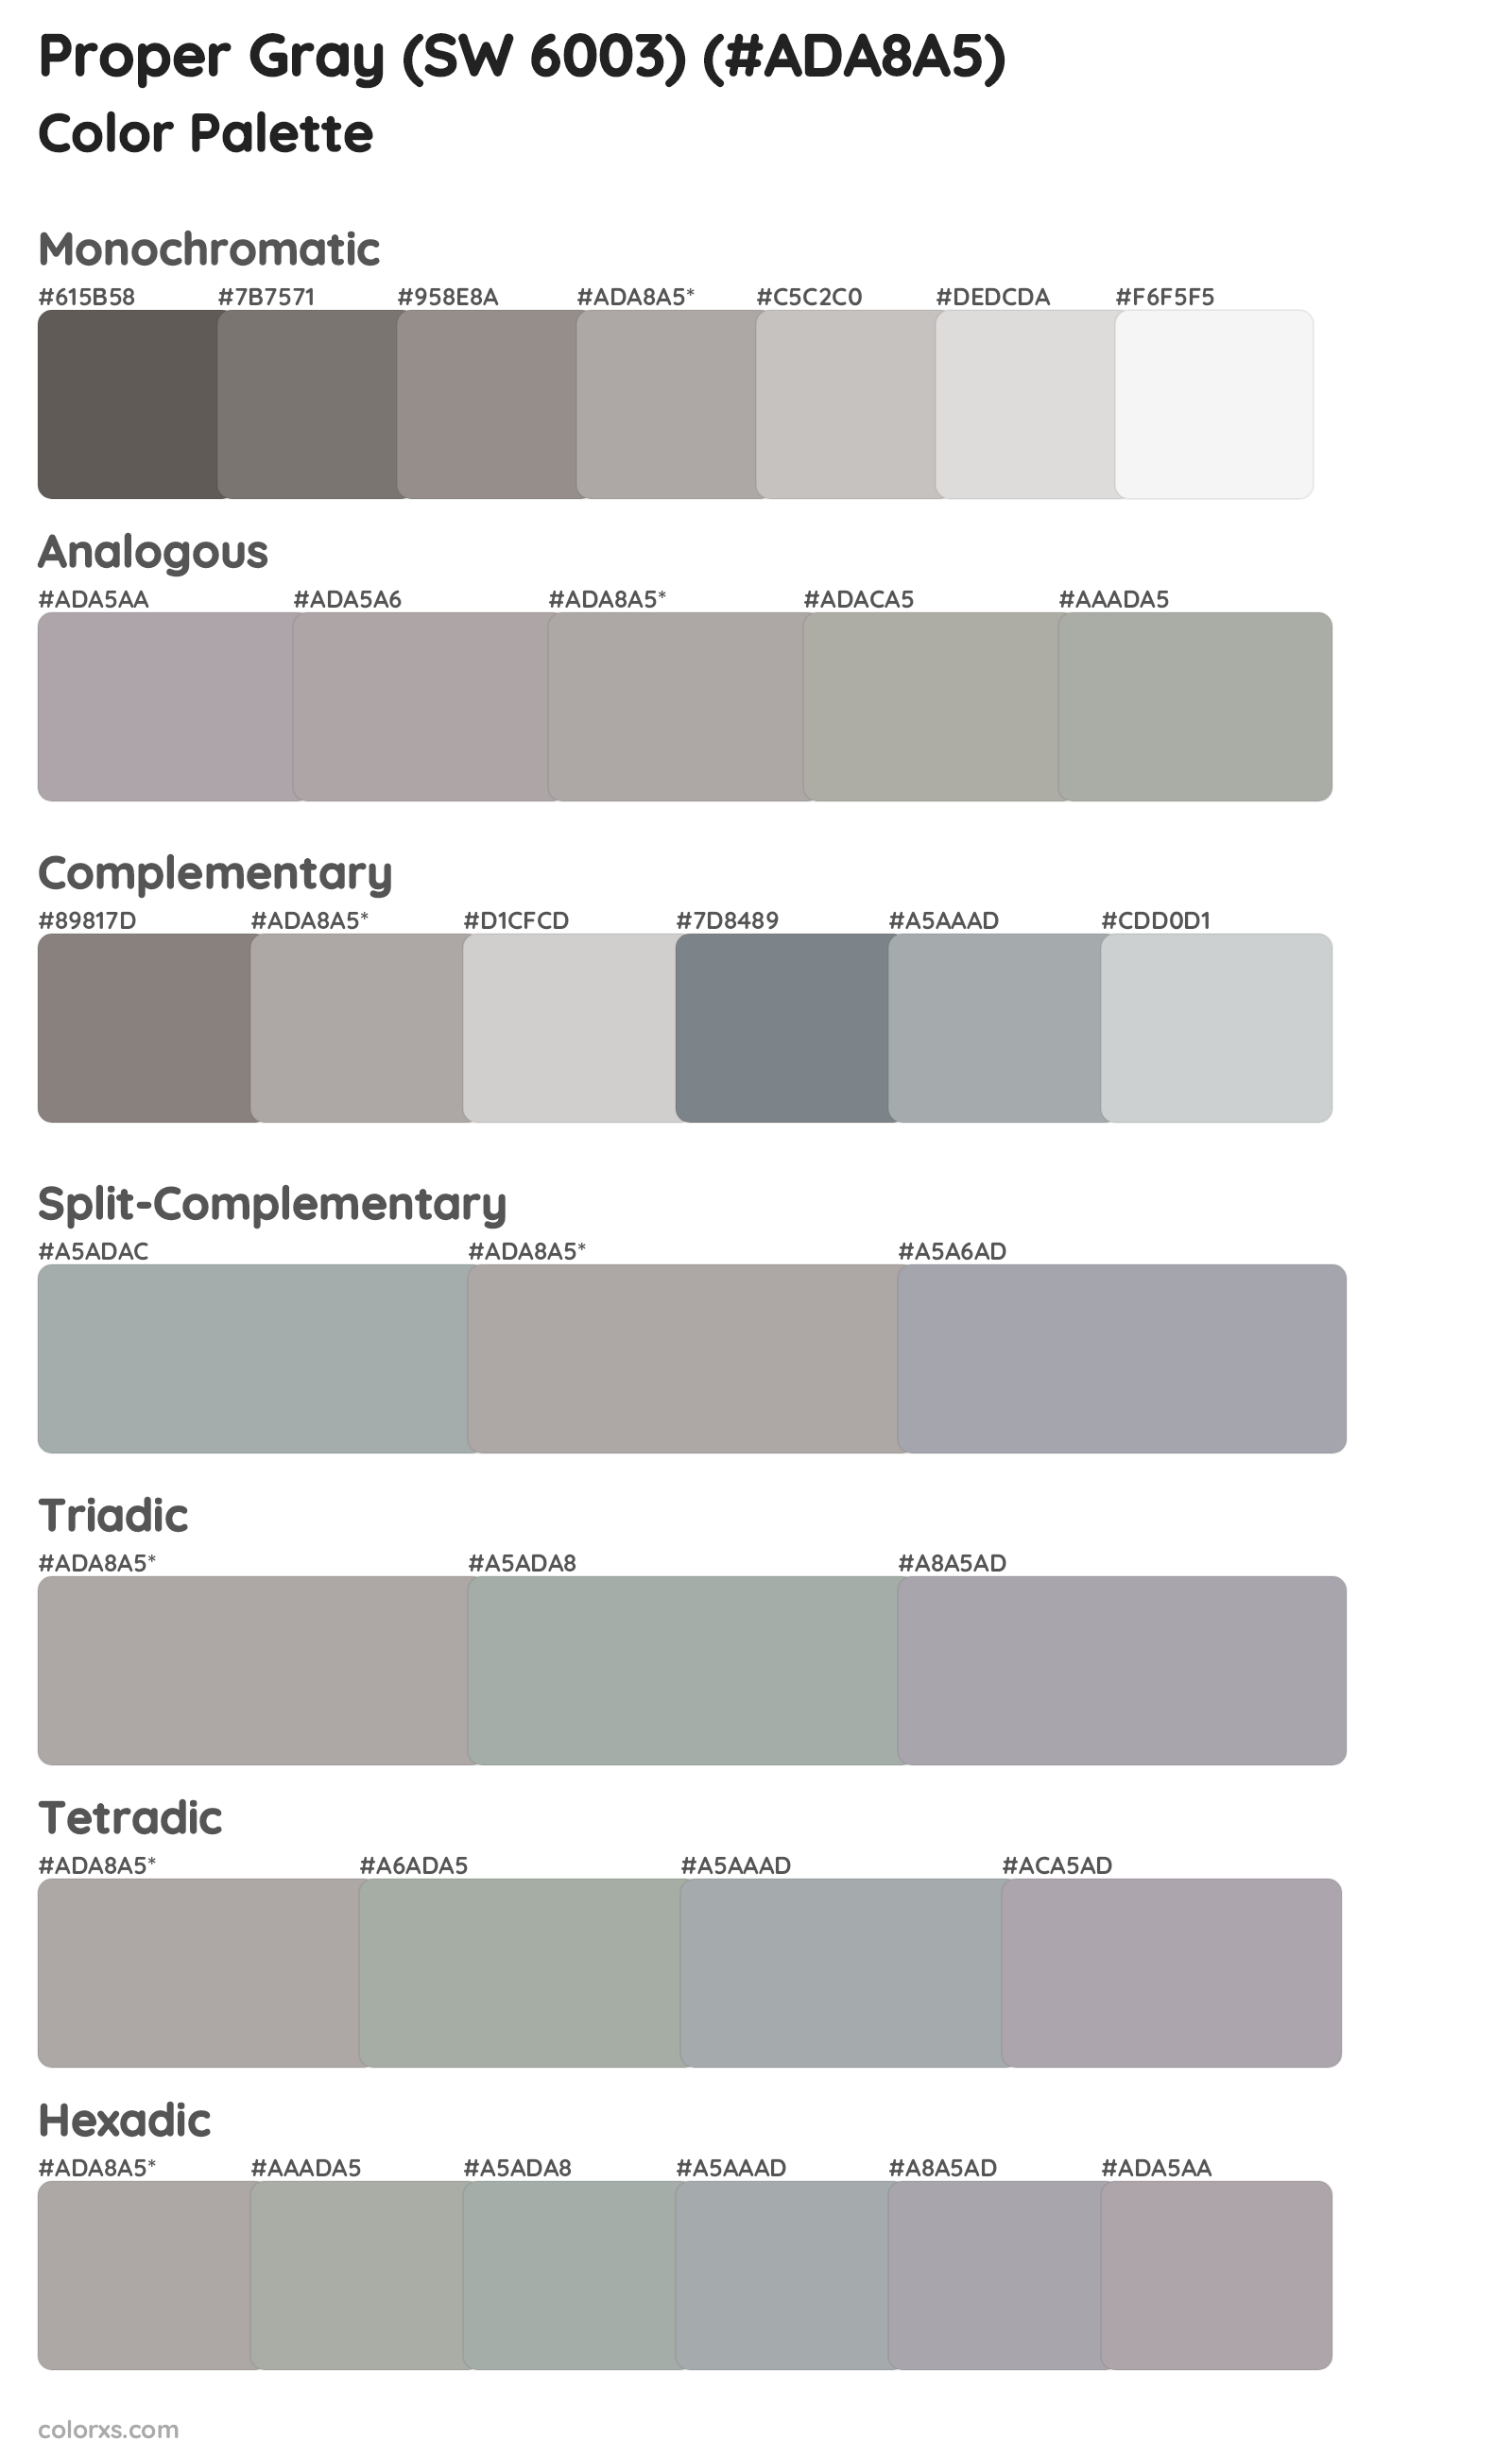 Proper Gray (SW 6003) Color Scheme Palettes